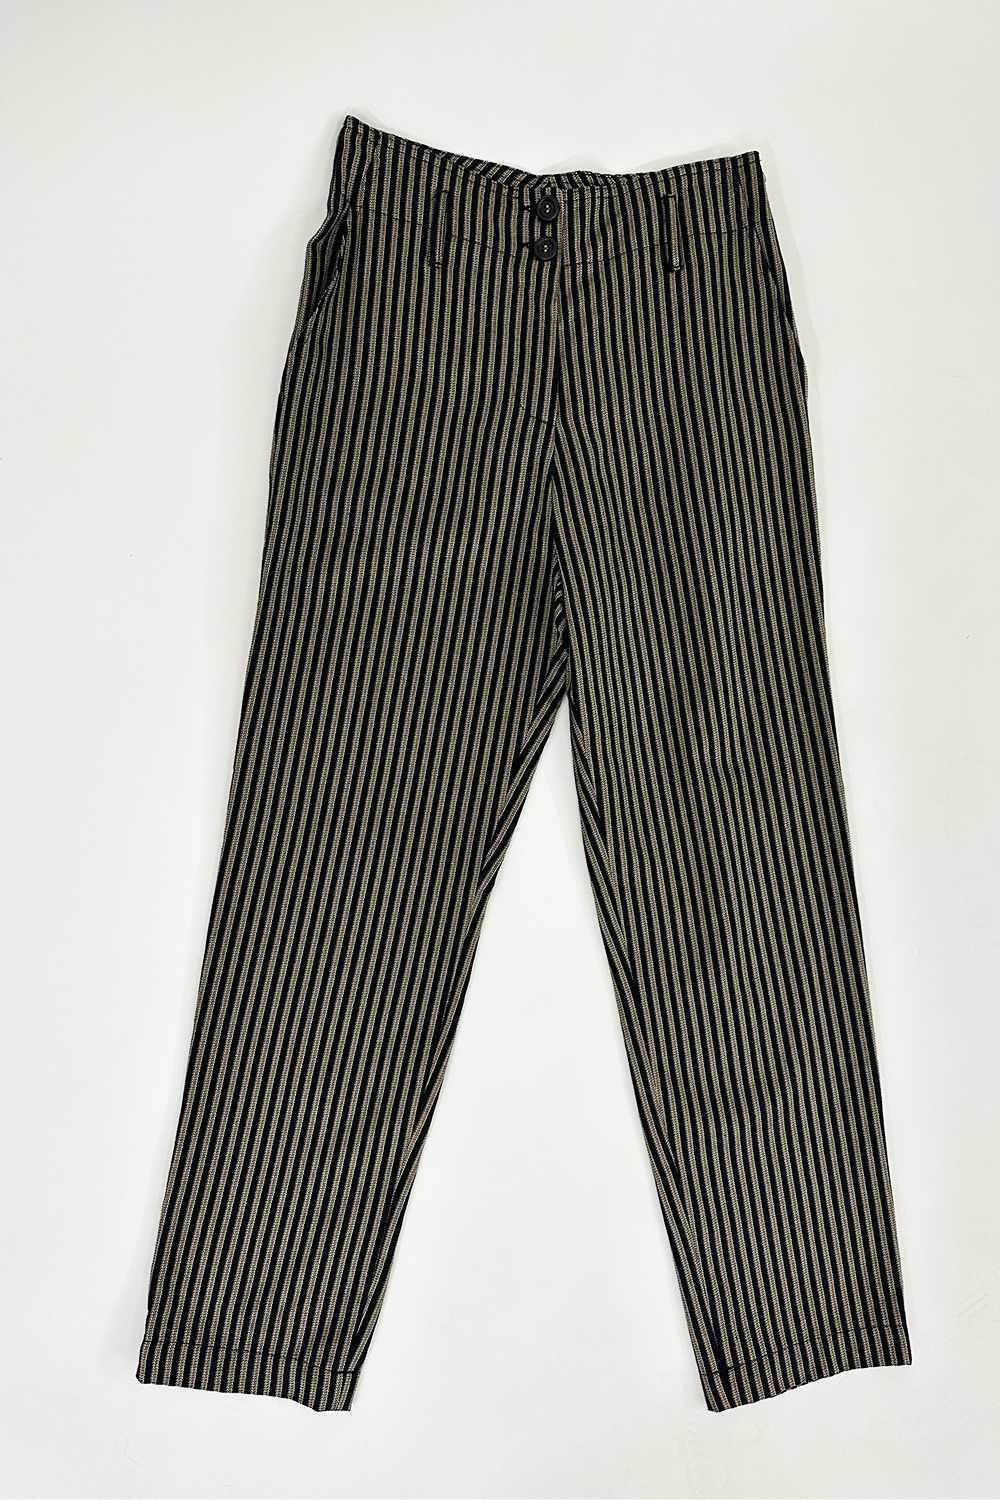 Tinsels - Norris Dehli Trousers: Stripe